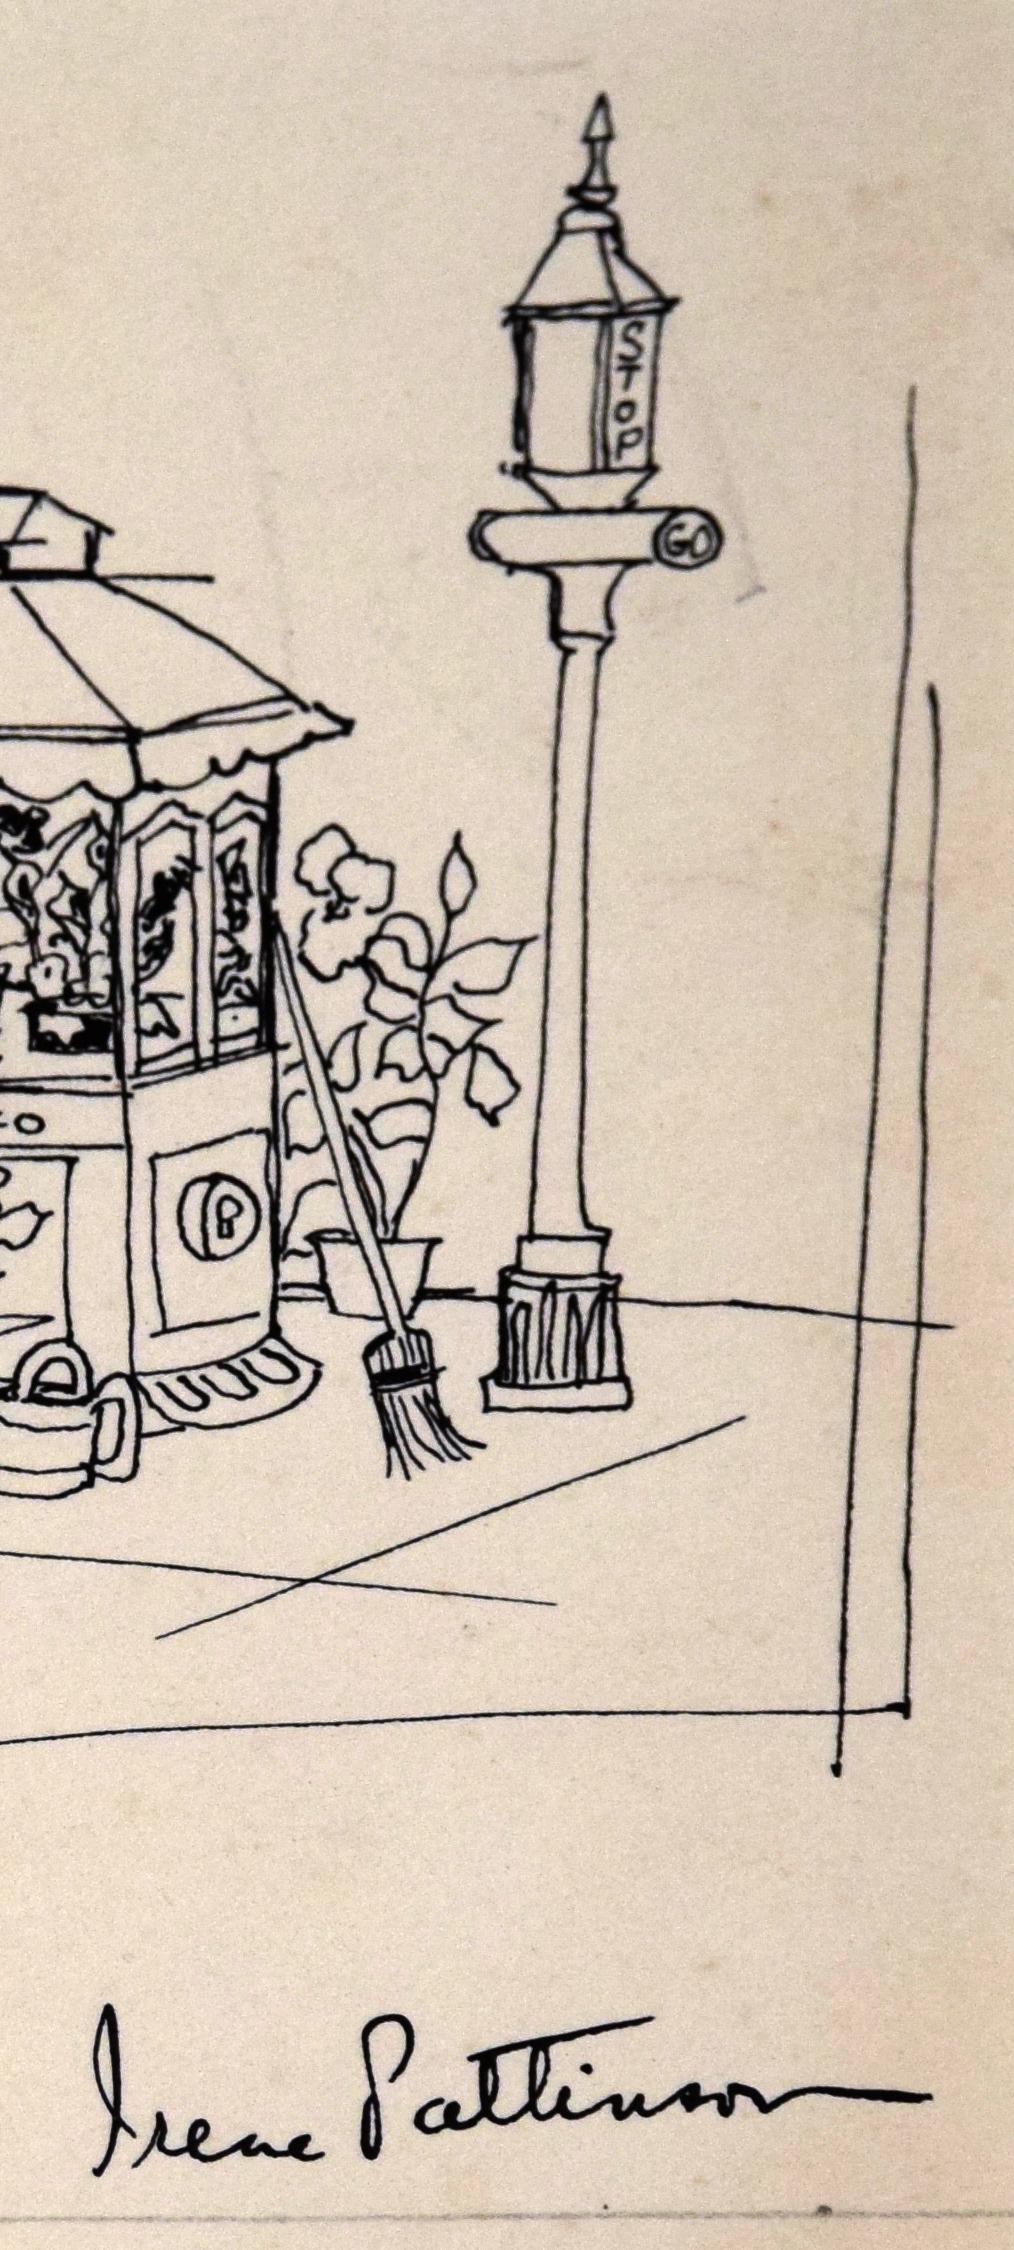 Flower Stand S.F. 1954 - Illustration vintage

Ce dessin à l'encre détaillé d'Irene Pattinson (américaine, 1909-1999) représente une charmante scène de rue de San Francisco dans laquelle un homme moustachu tient des fleurs, son chapeau et sa tenue